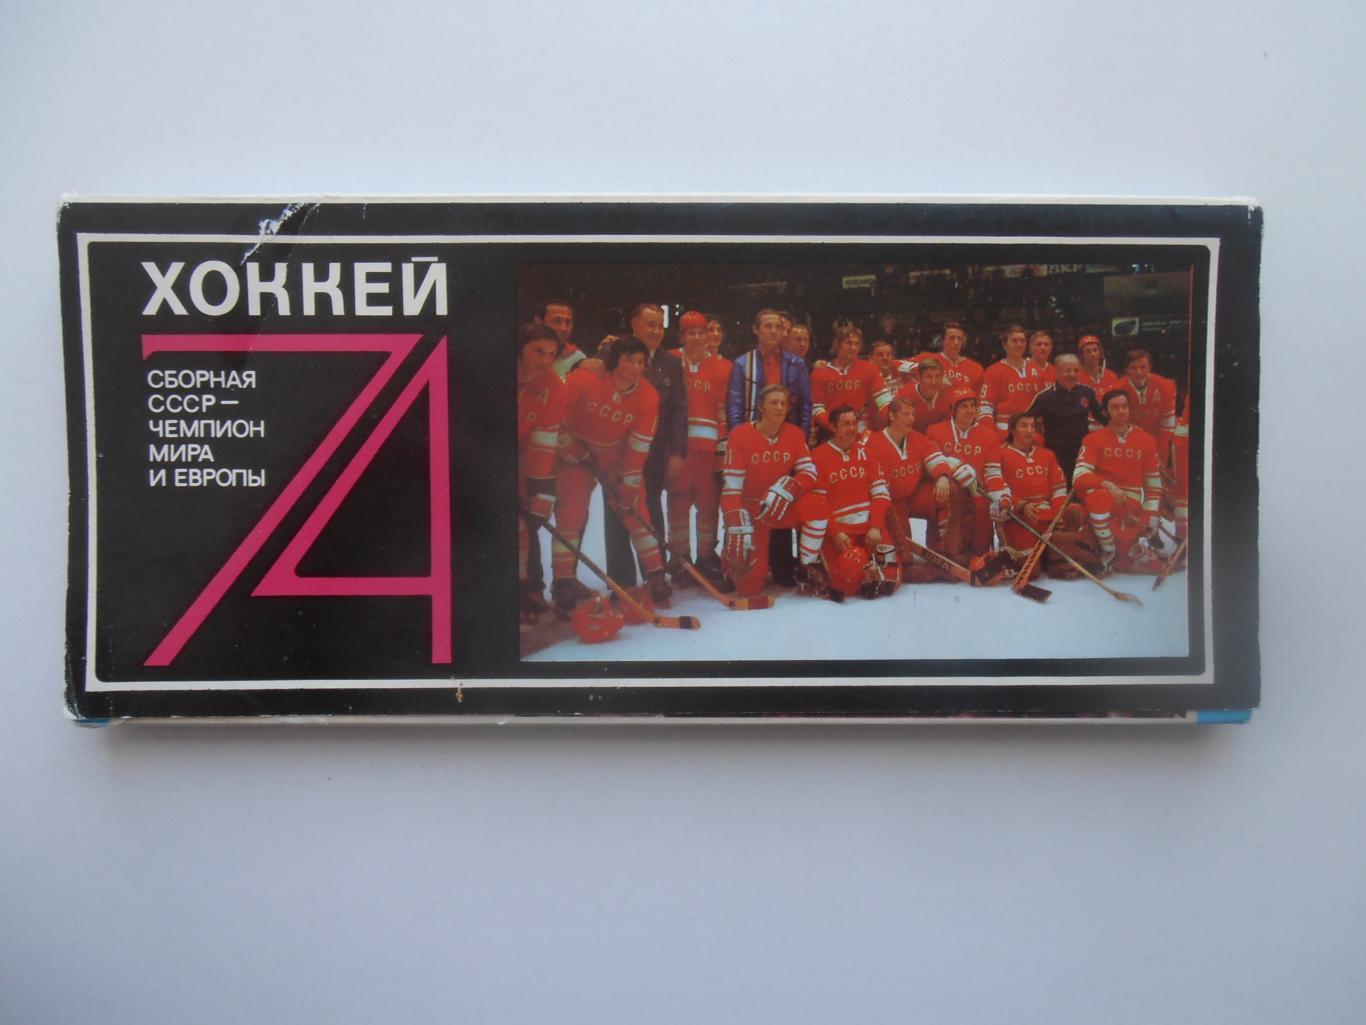 Набор сборная СССР-чемпион Мира и Европы по хоккею 1974